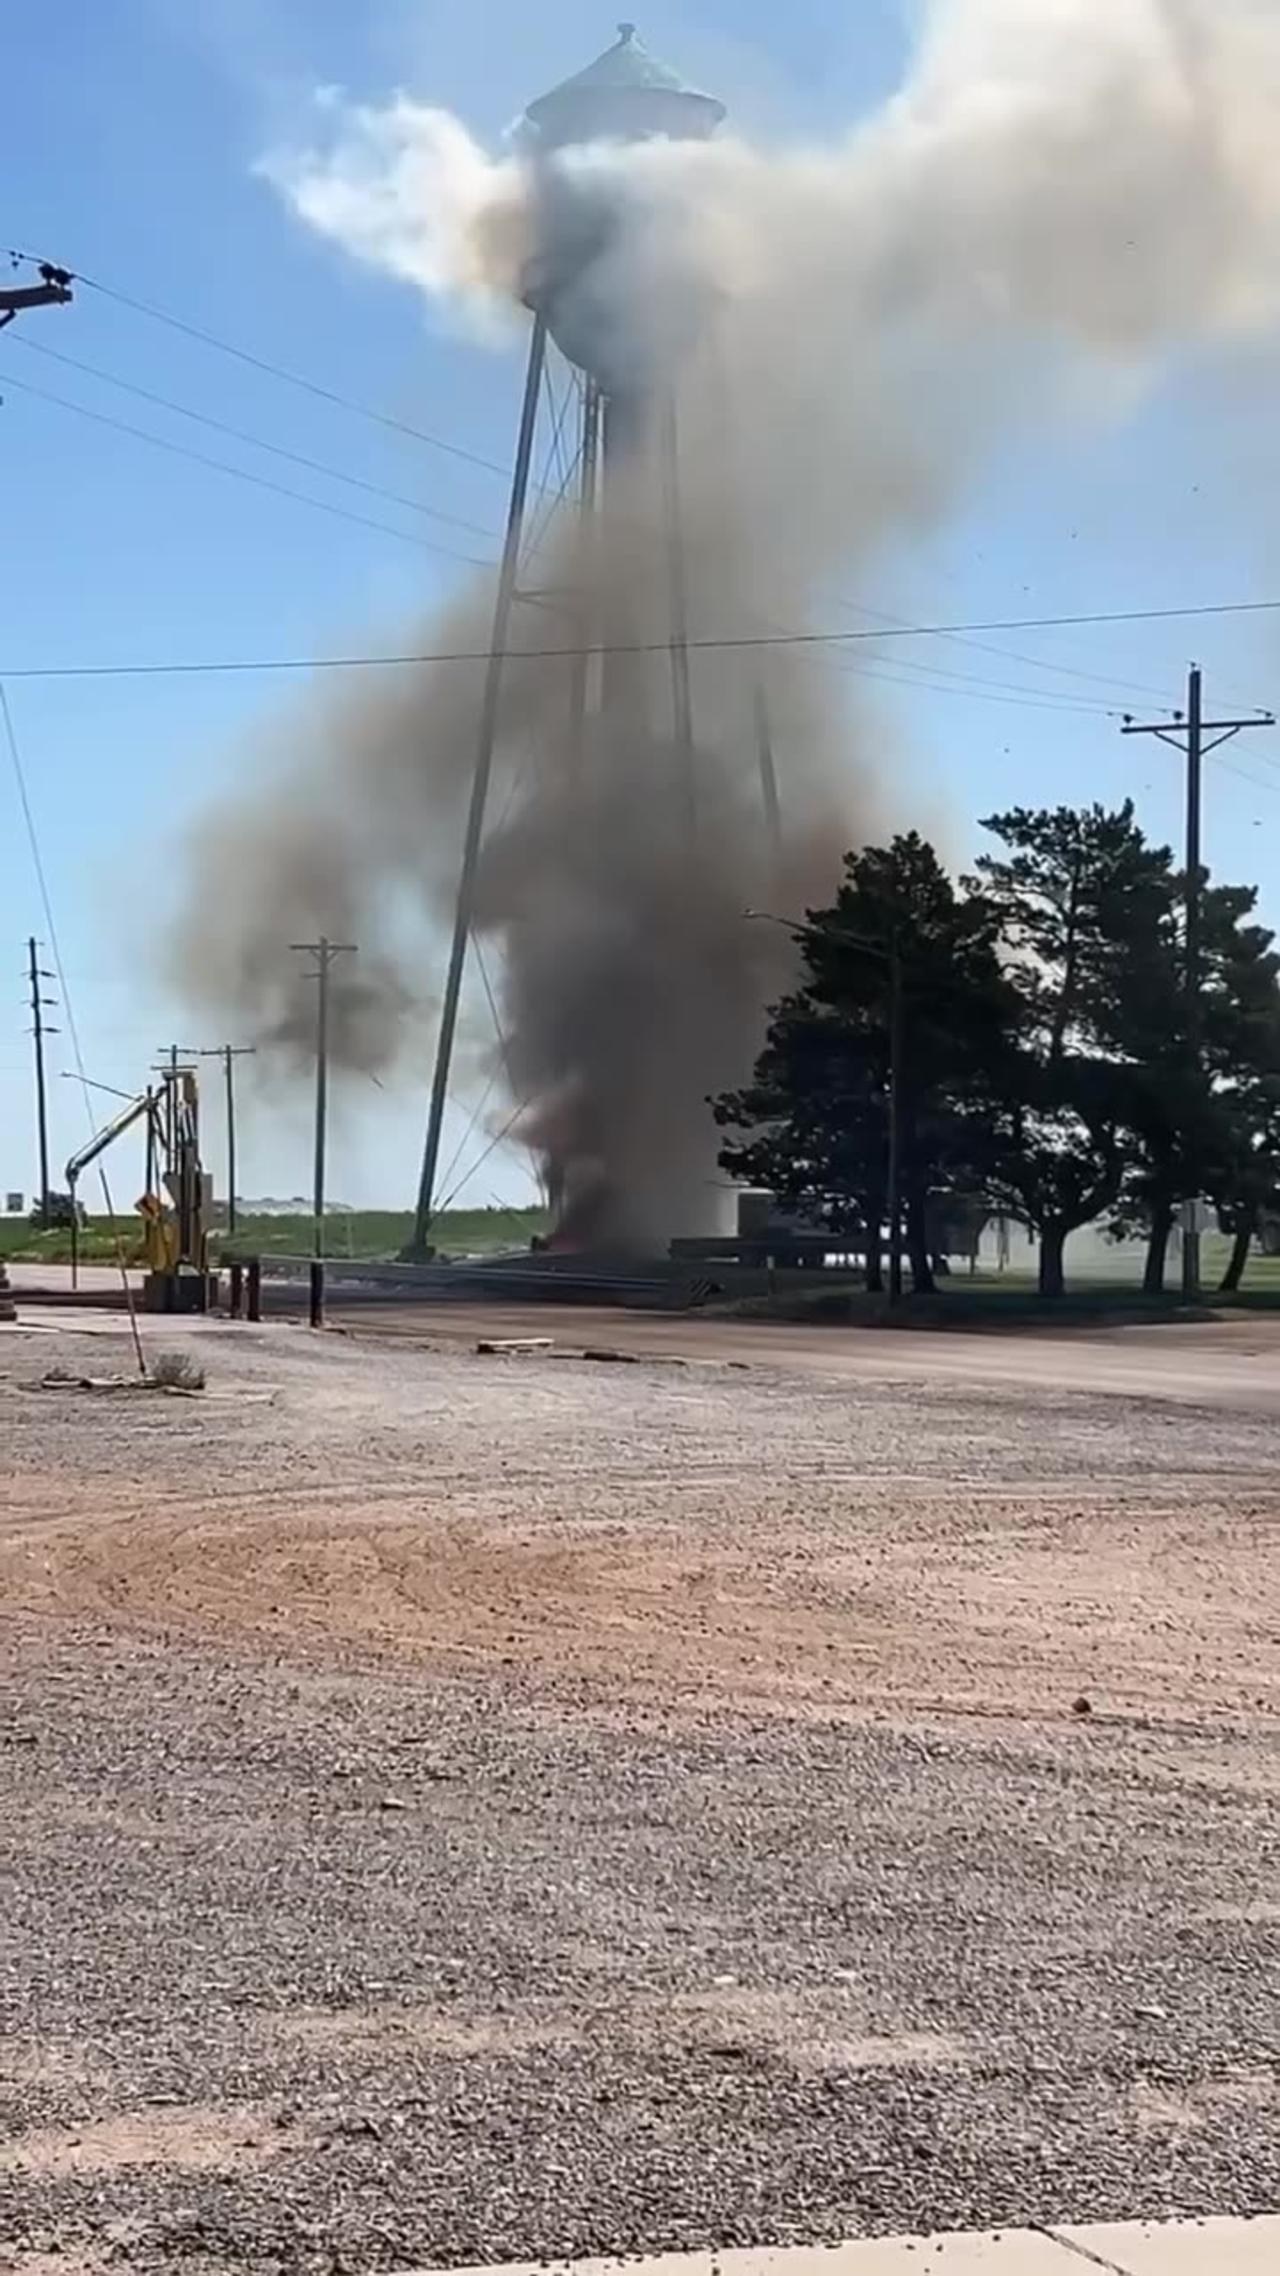 Water Tower catches on fire in Venango, Nebraska